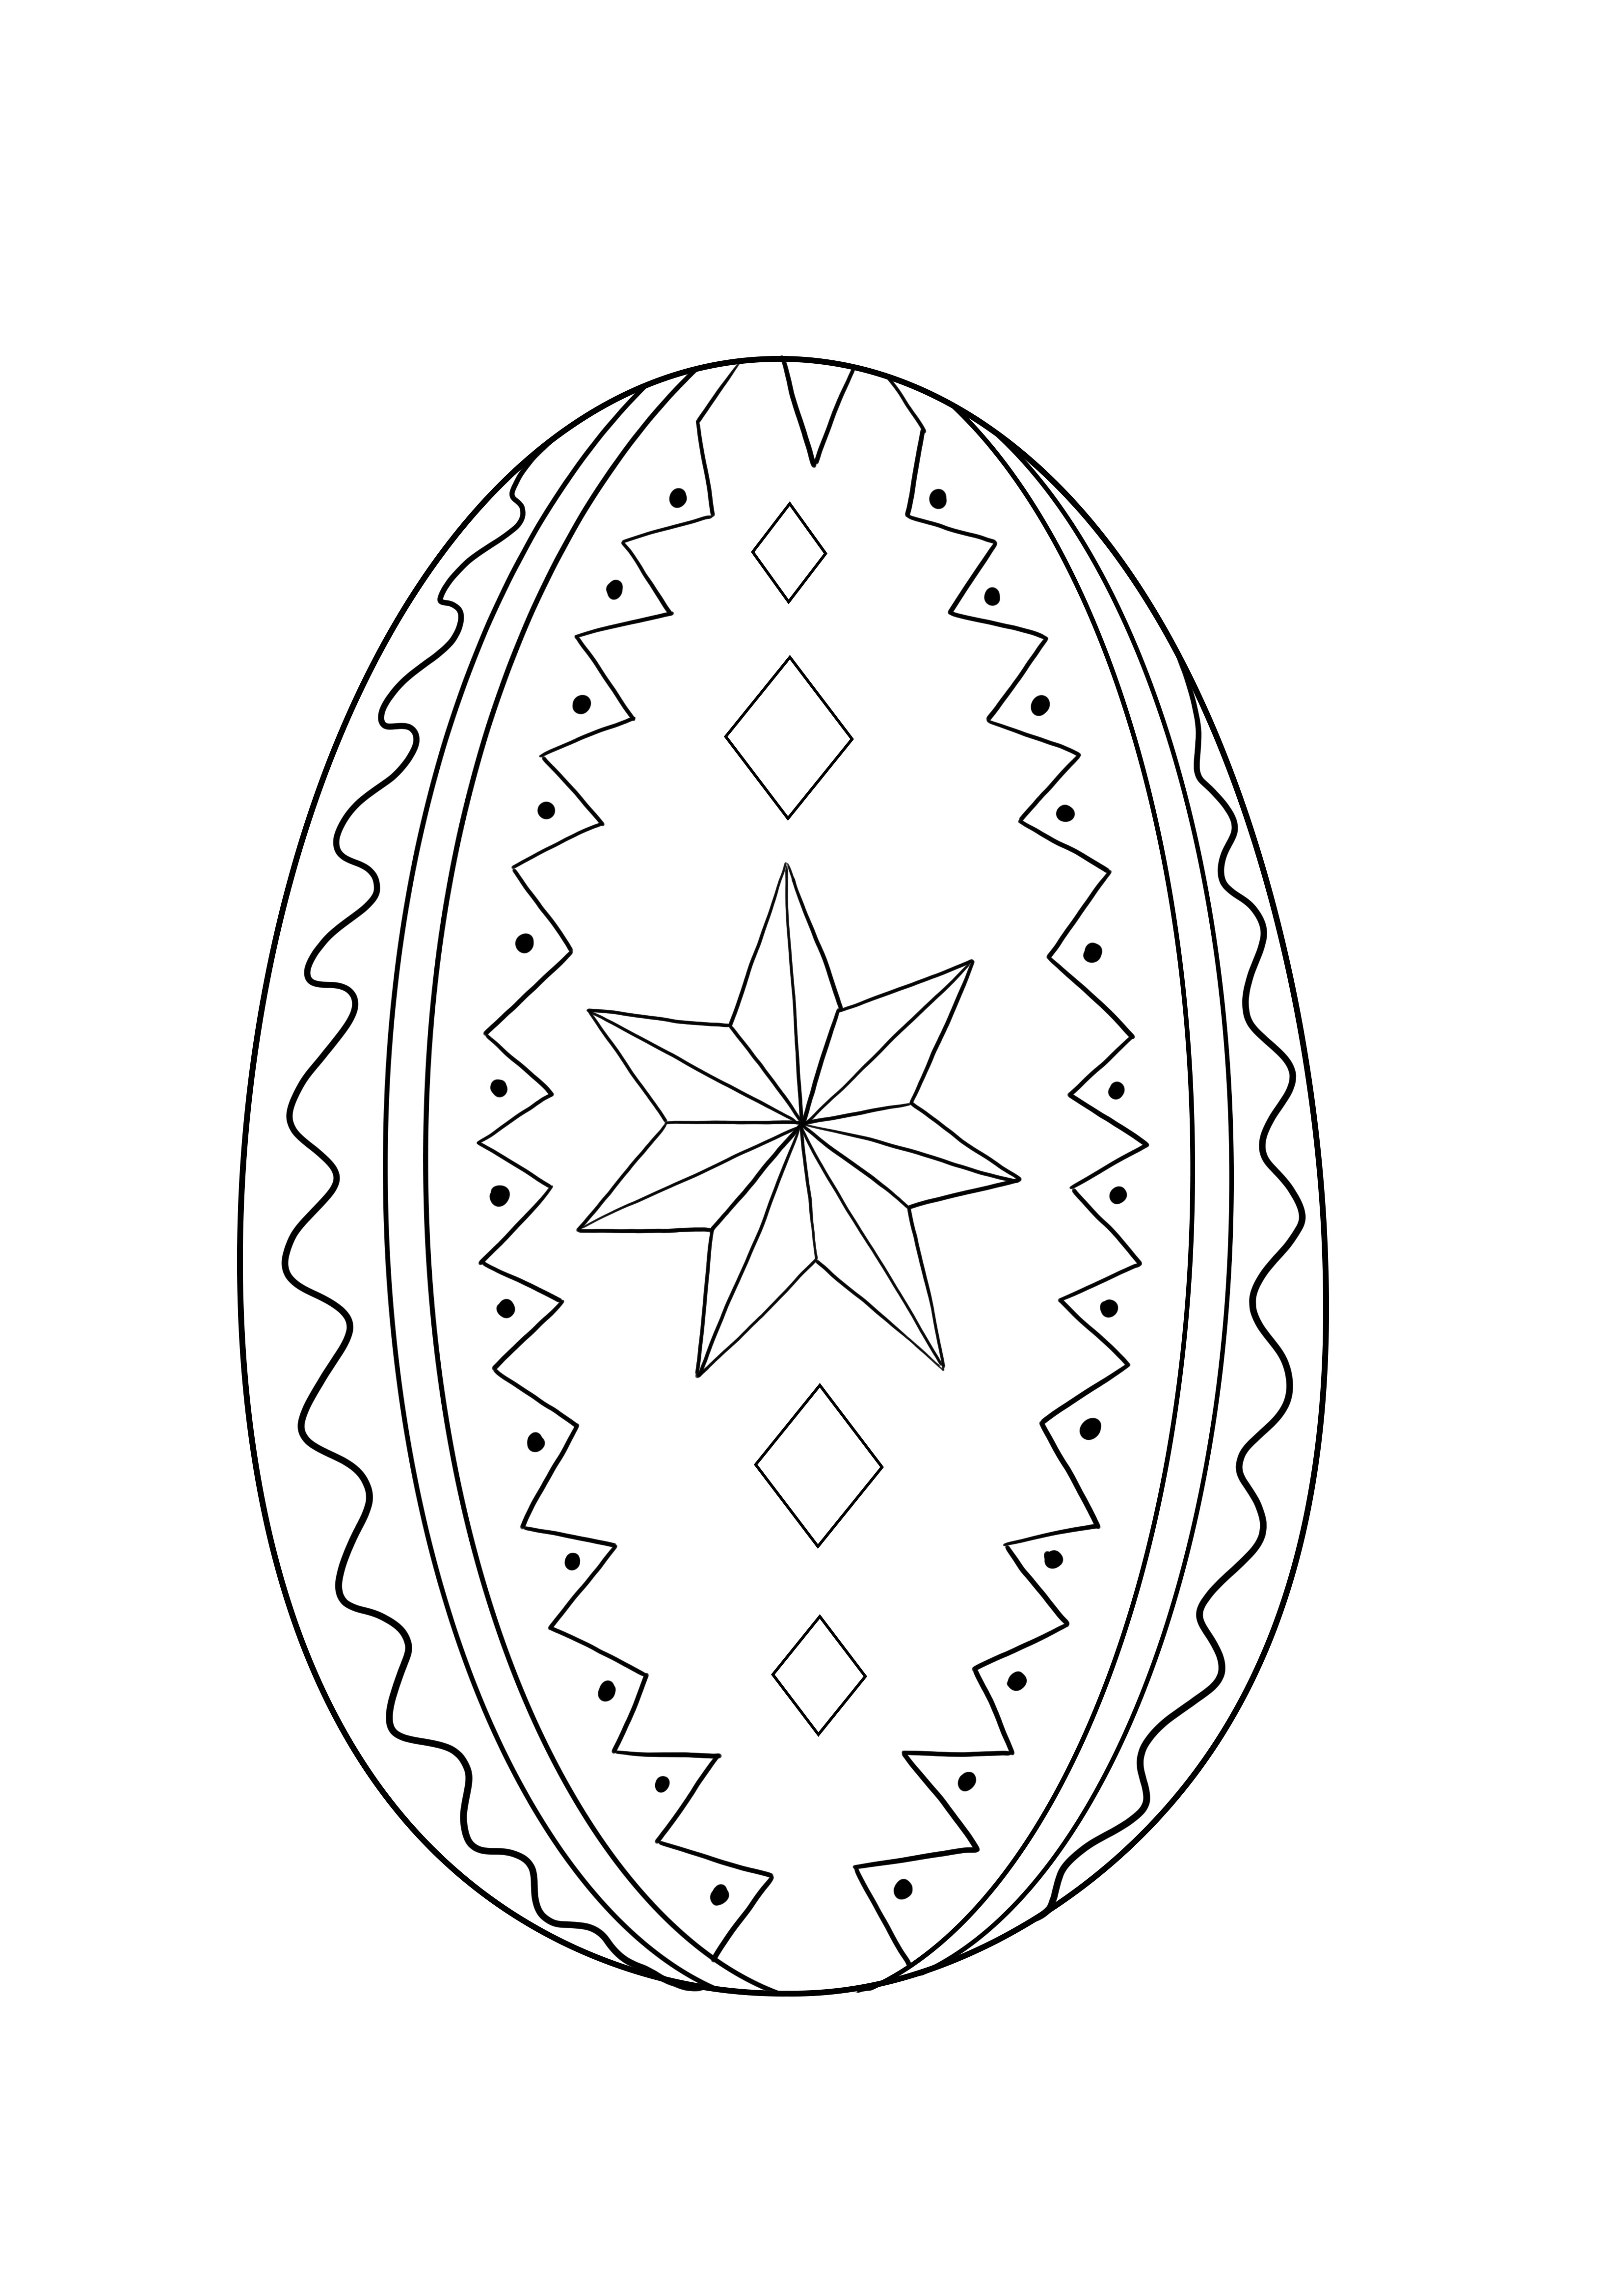 Image d'oeuf de Pâques décoré à imprimer et colorier gratuitement